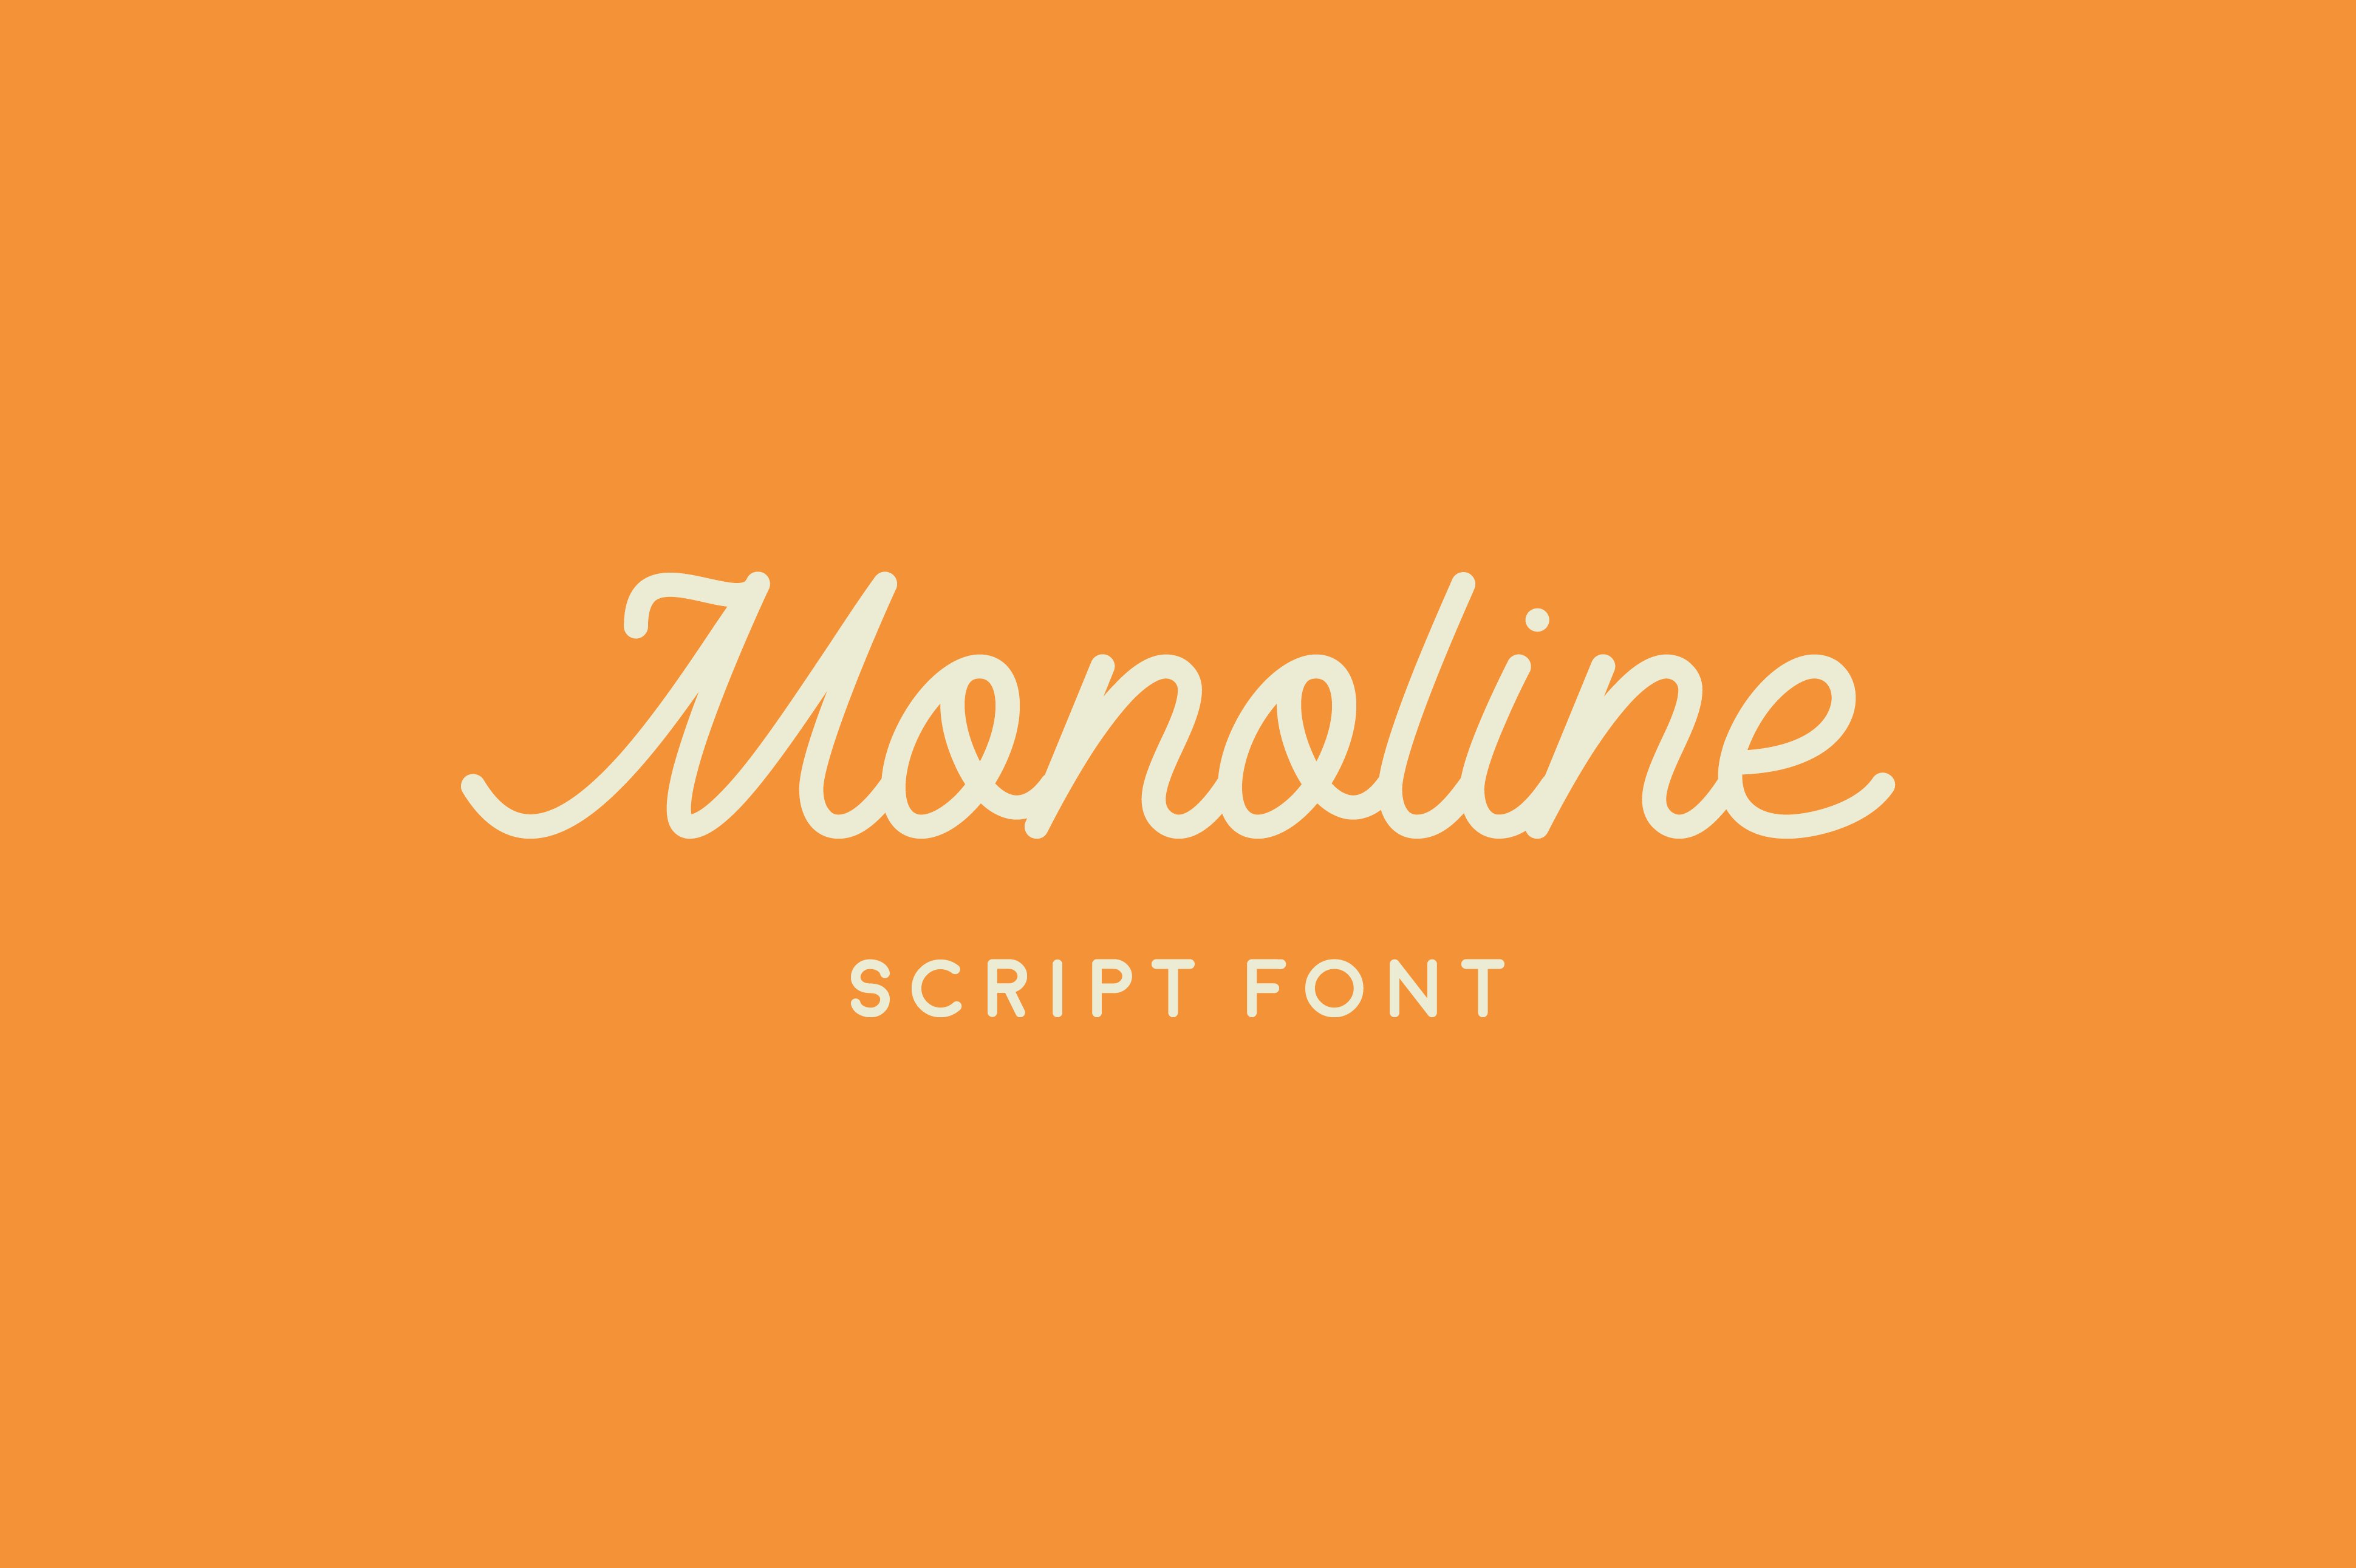 Beispiel einer Monoline Script-Schriftart